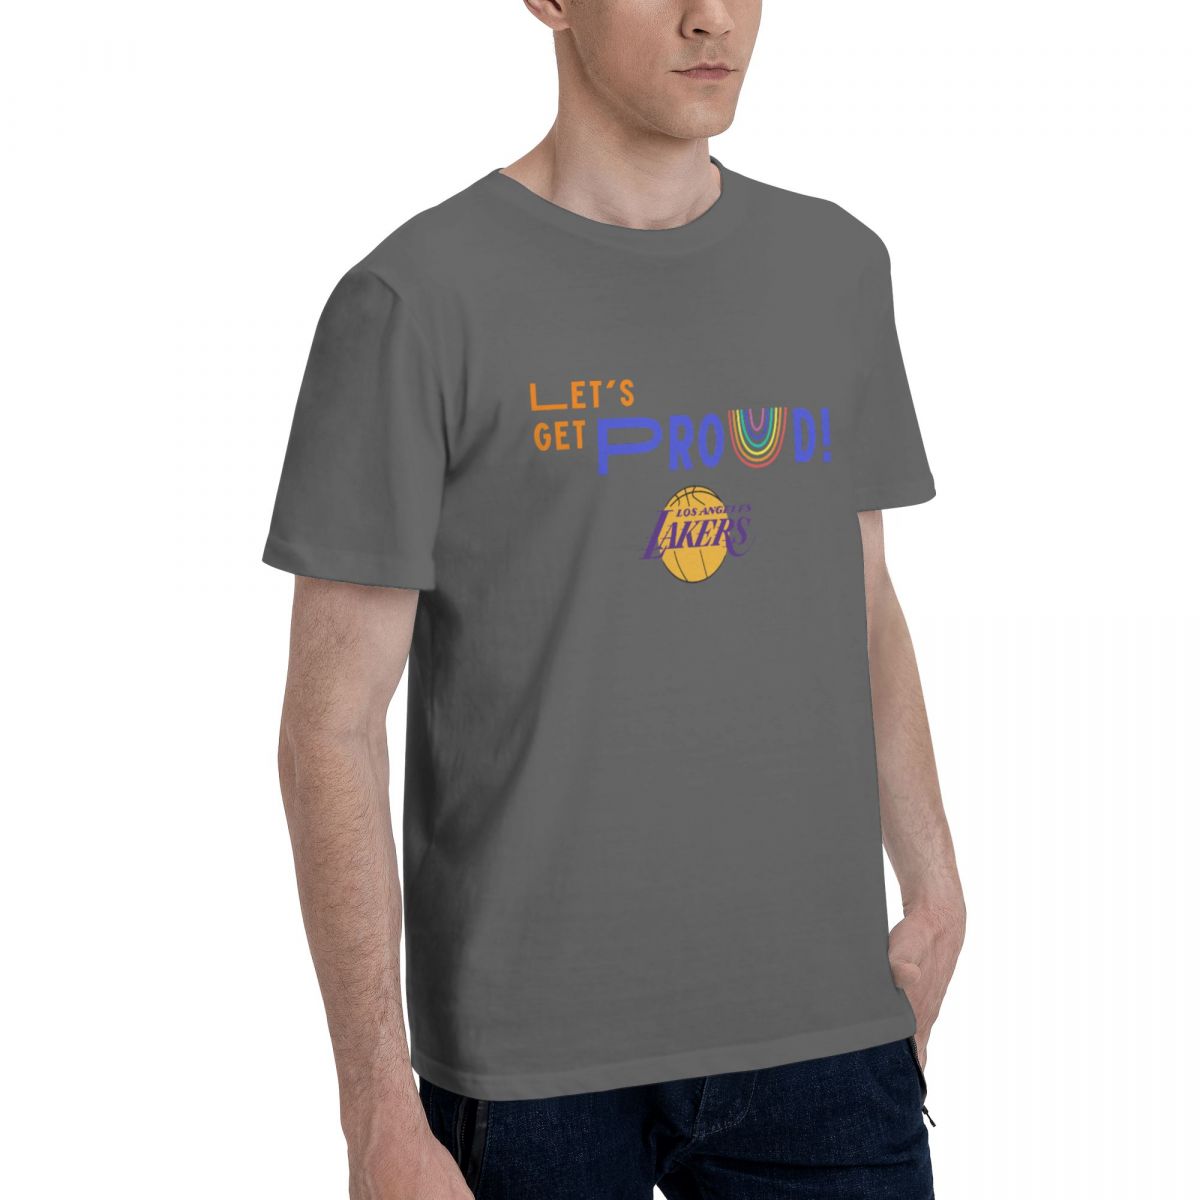 Los Angeles Lakers Let's Get Proud Men's Cotton Shirt